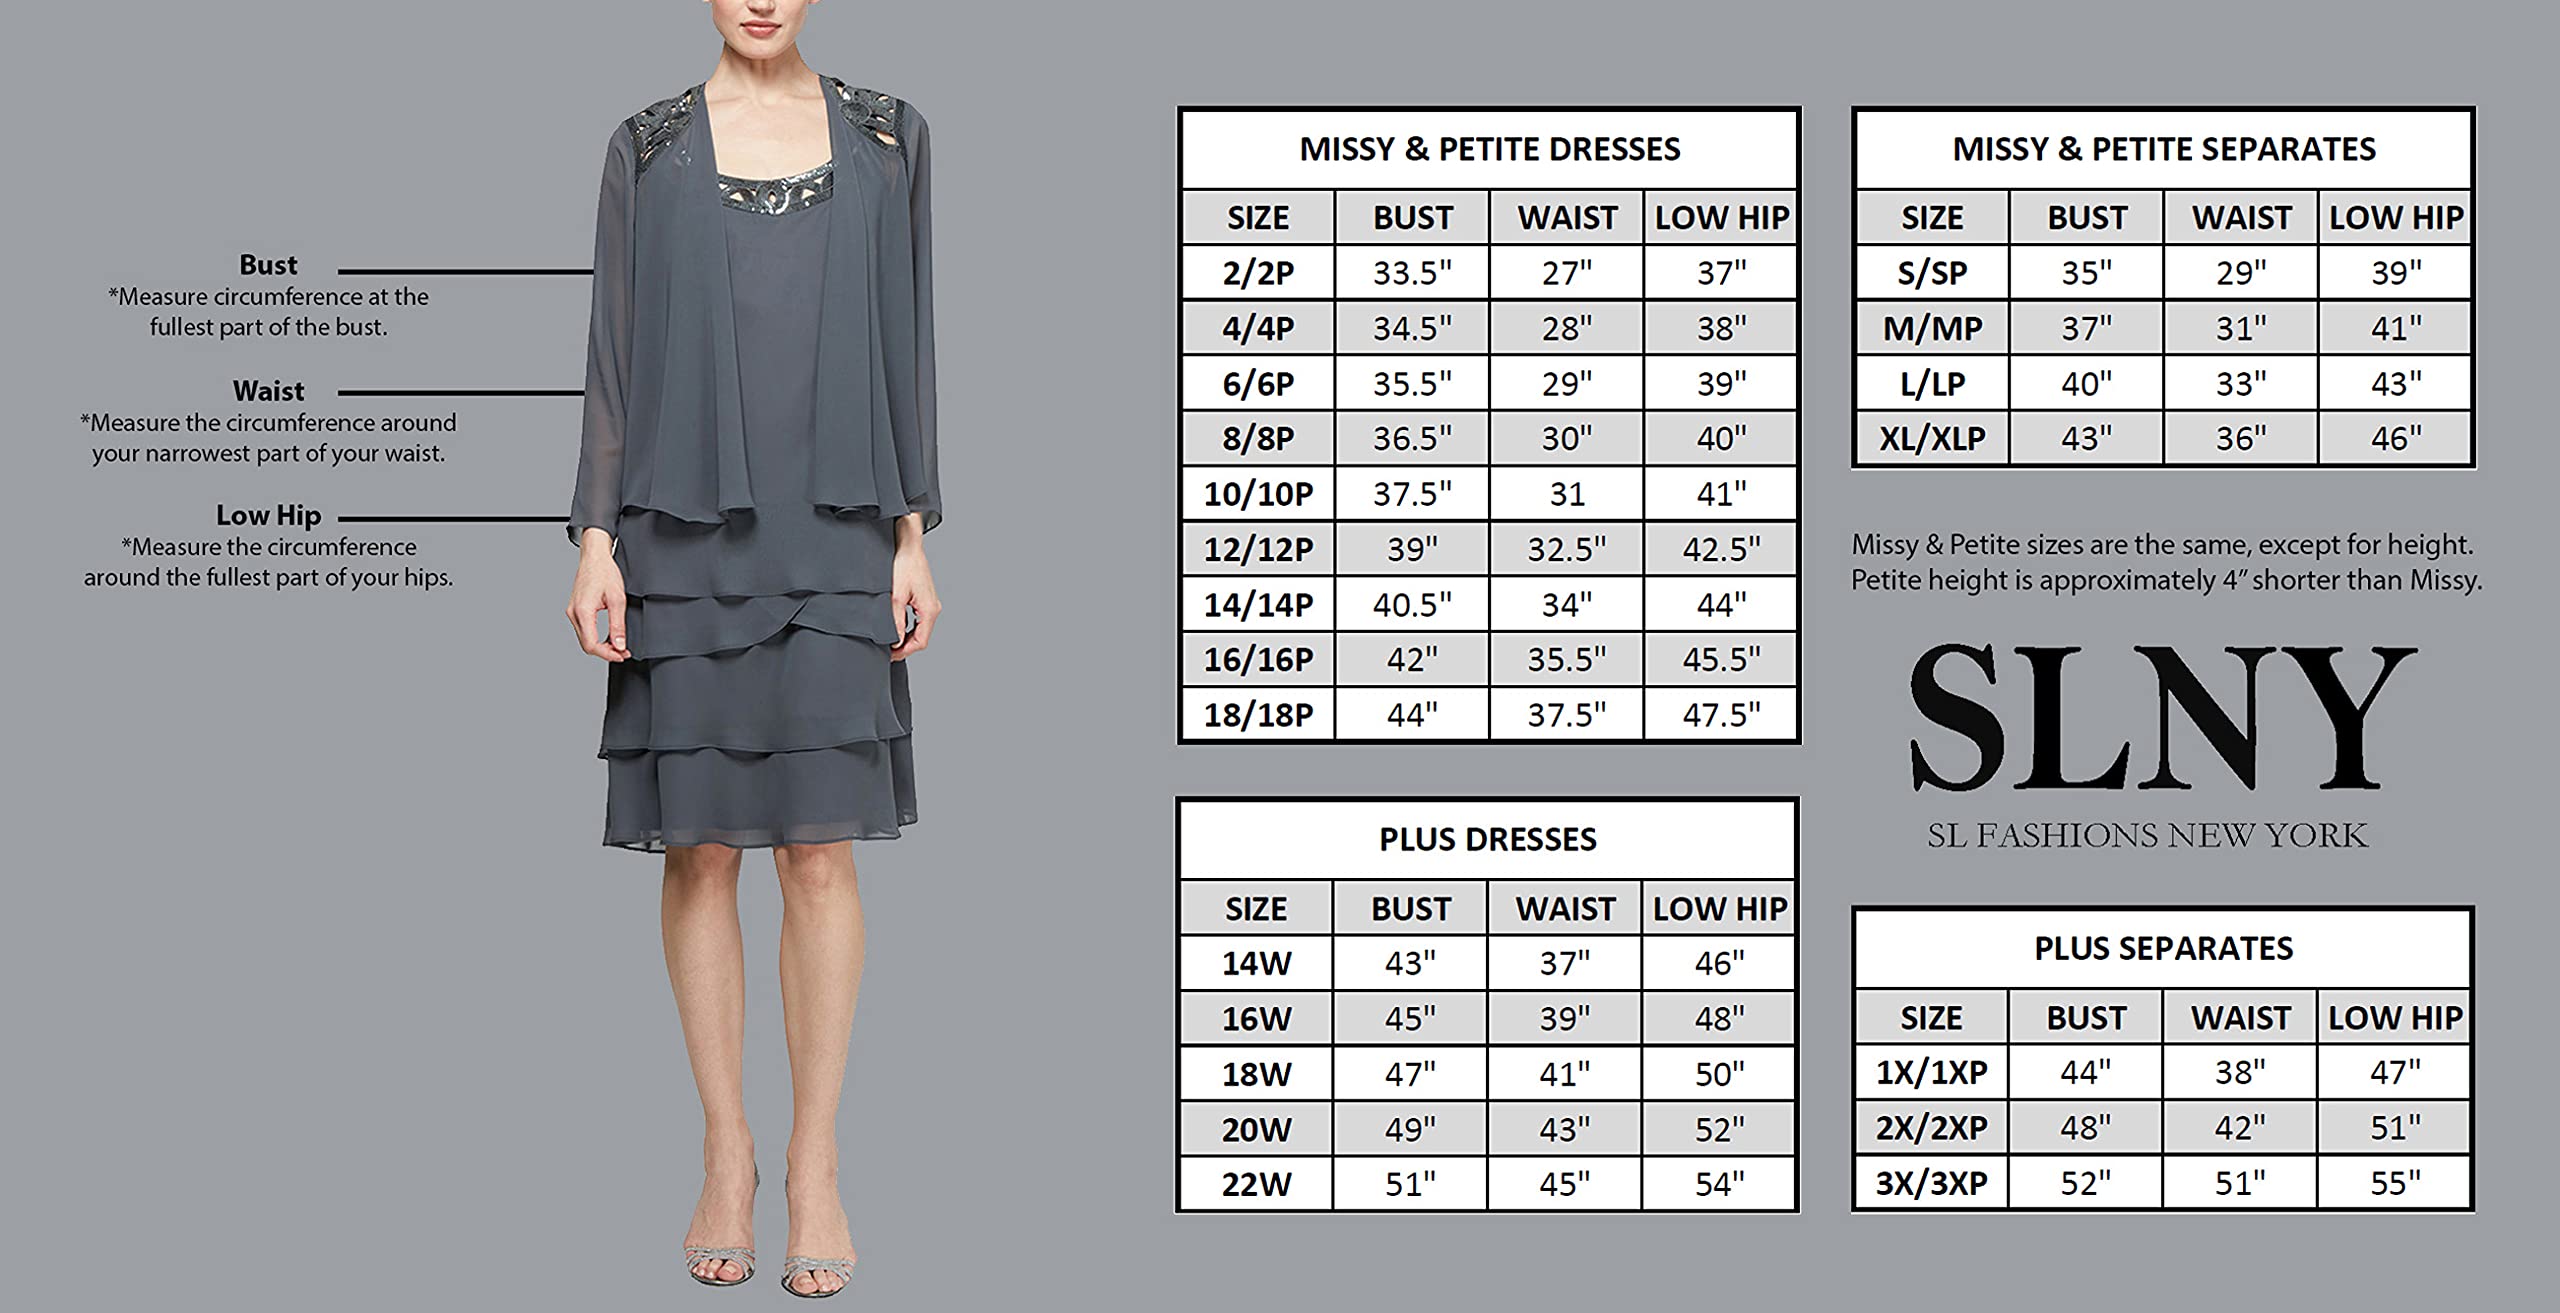 S.L. Fashions Women's Tea Length Cap Sleeve Sequin Lace A-line Dress